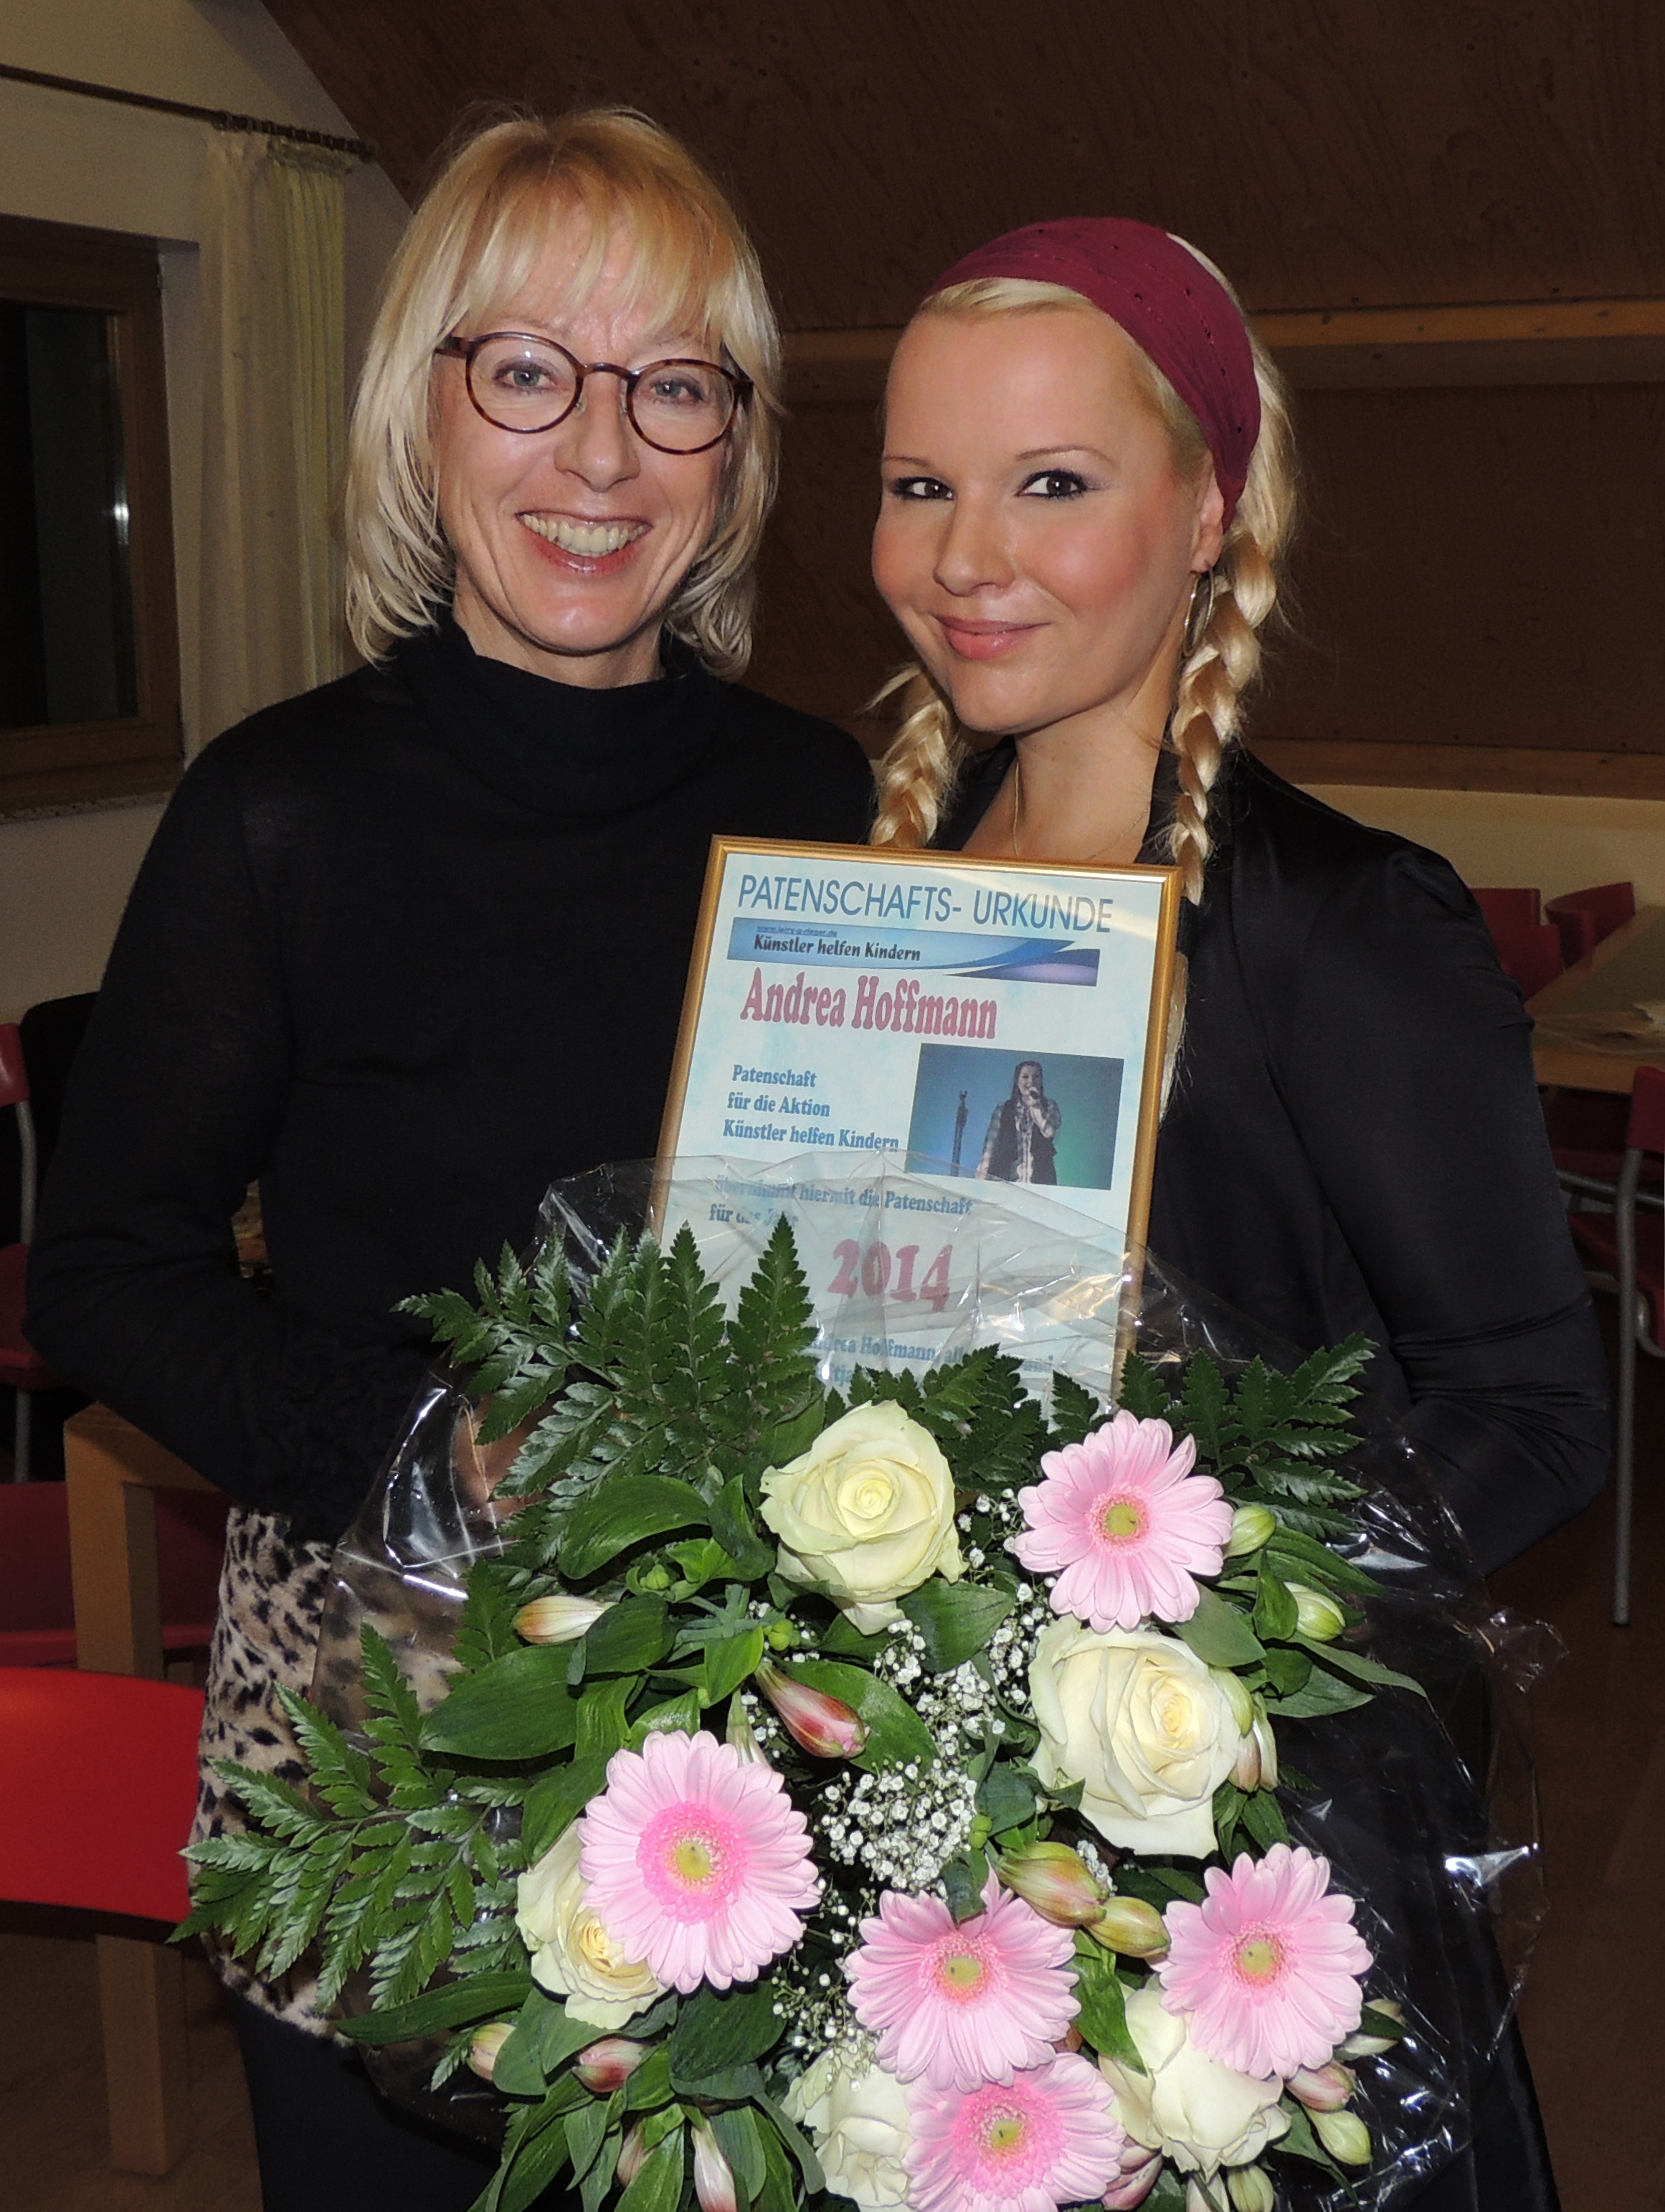 KÖLN: Bürgermeisterin Frau E. Scho-Antwerpes mit Andrea Hoffmann, Patin 2014 für die Aktion "Künstler helfen Kindern" in Köln